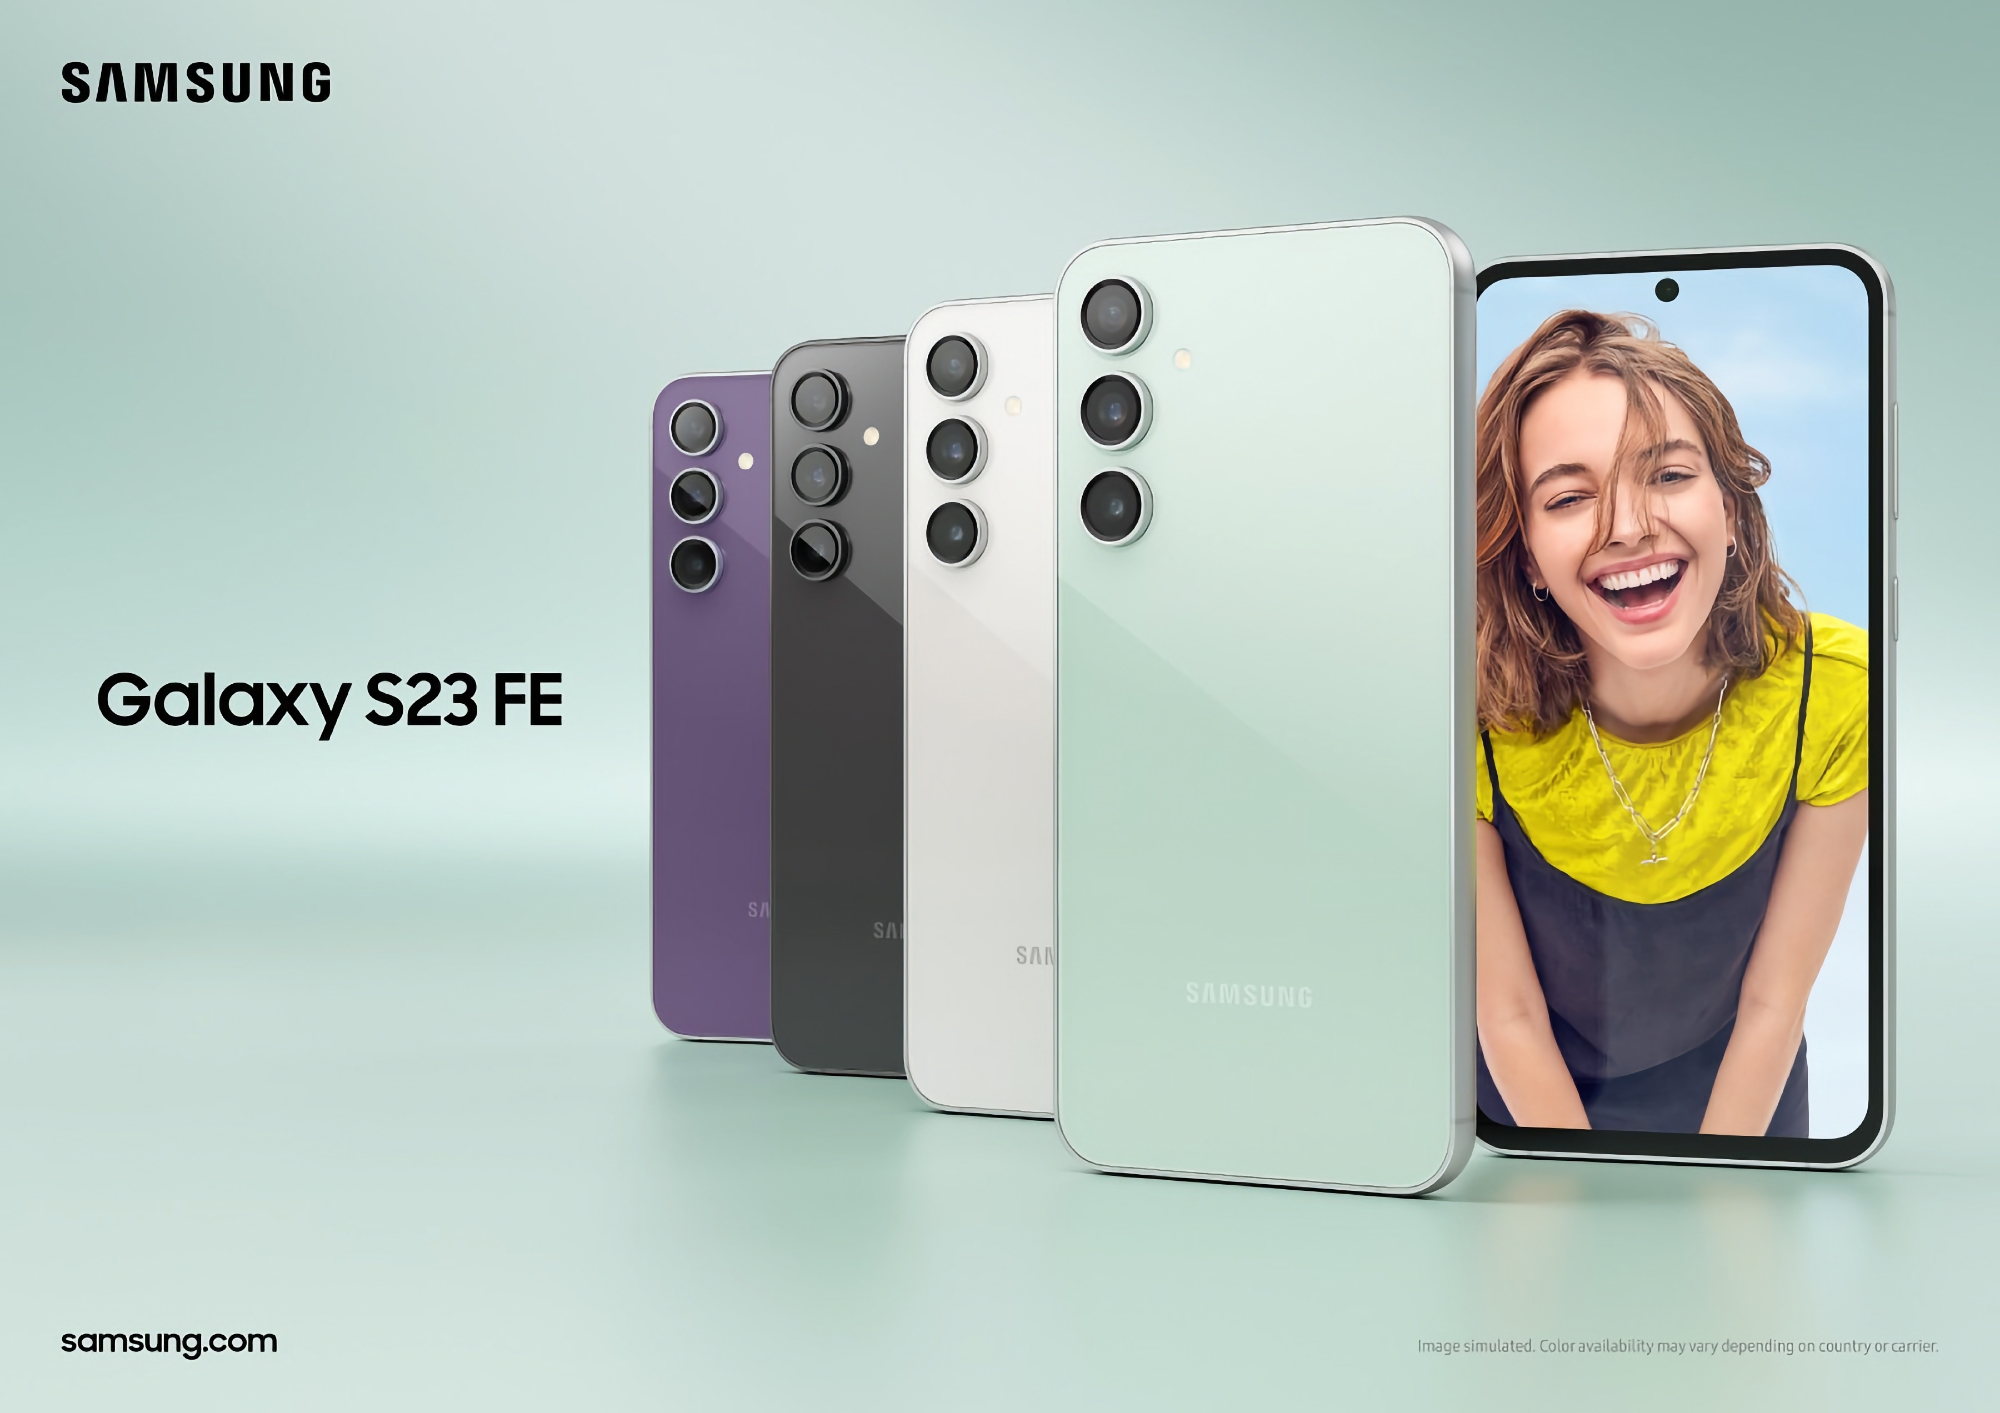 Samsung Galaxy S23 FE con pantalla OLED de 120 Hz, chip Snapdragon 8 Gen 1 y cámara de 50 MP ha empezado a venderse en EE.UU.